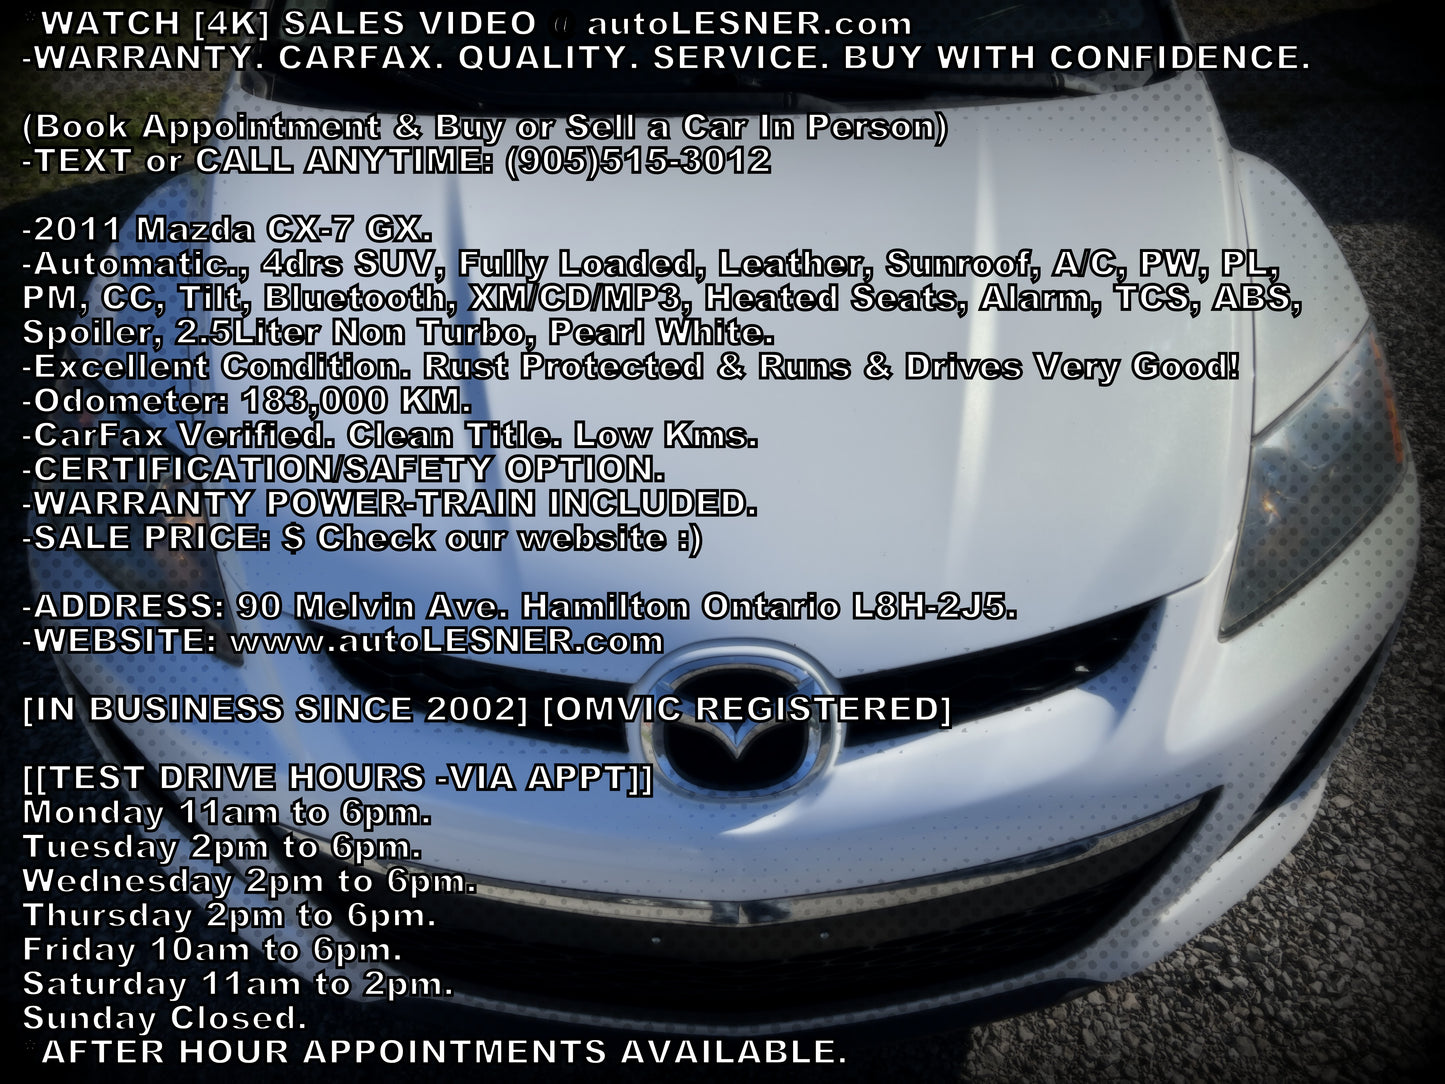 2011 Mazda CX-7 GX -Auto Fully Loaded 183,KM -Warranty!